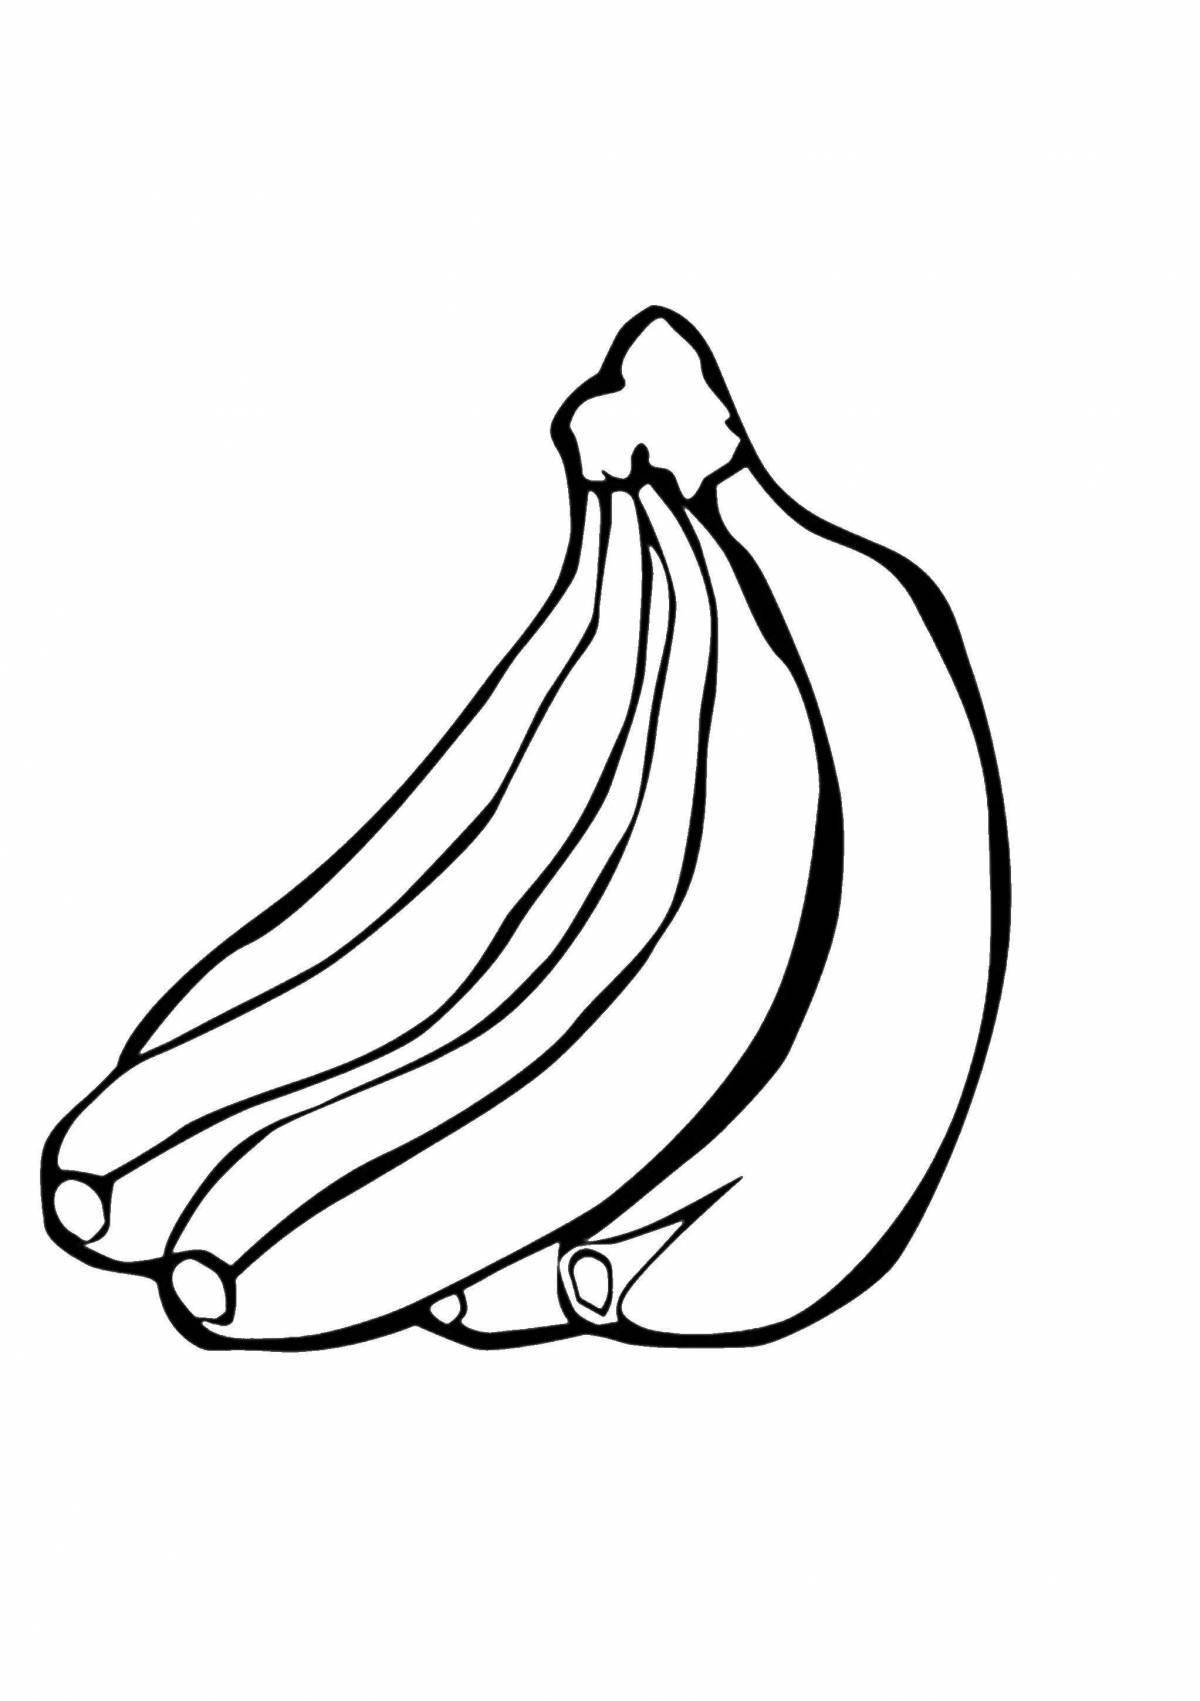 Funny drawing of a banana